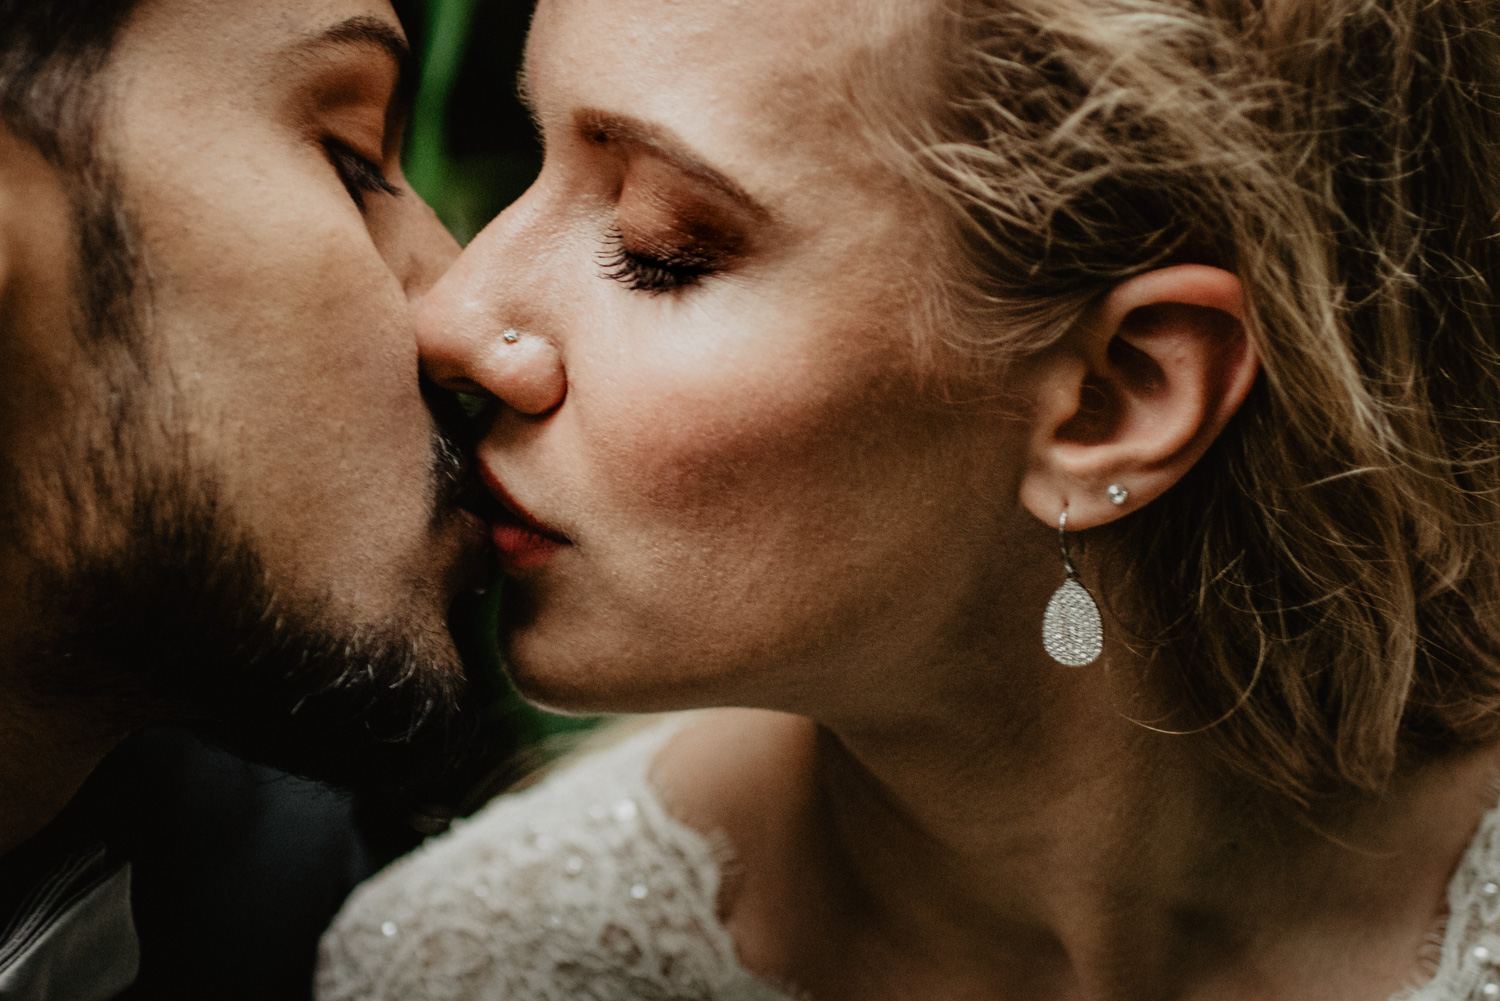 Ein zarter sinnlicher Kuss beim Brautpaar-Fotoshooting.